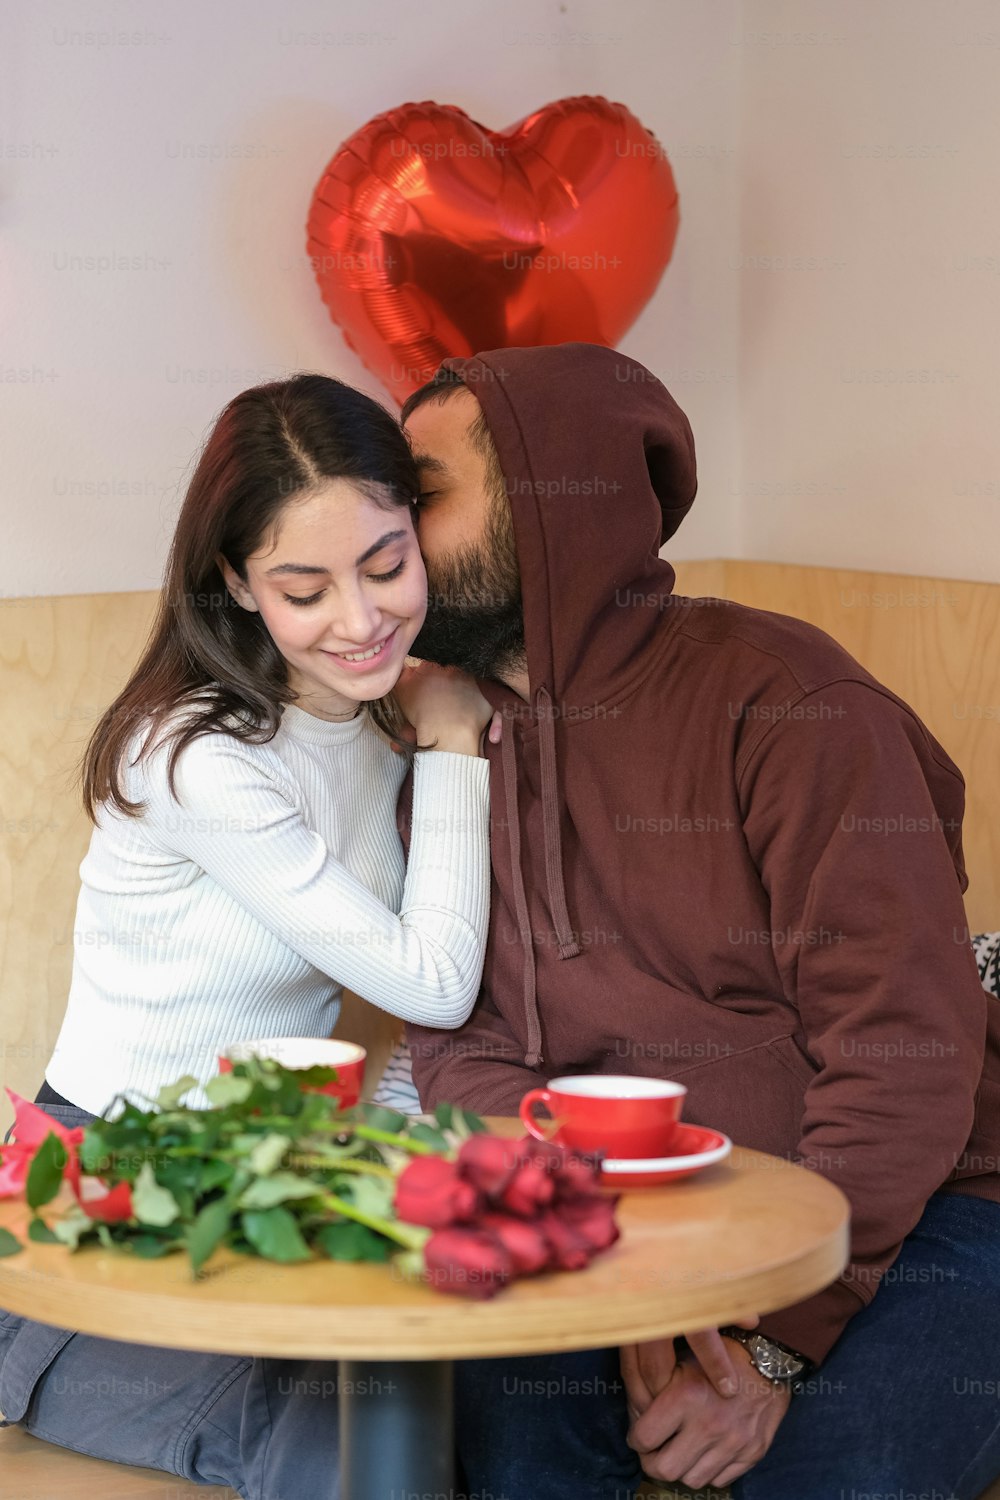 Un homme et une femme assis à une table avec un ballon en forme de cœur